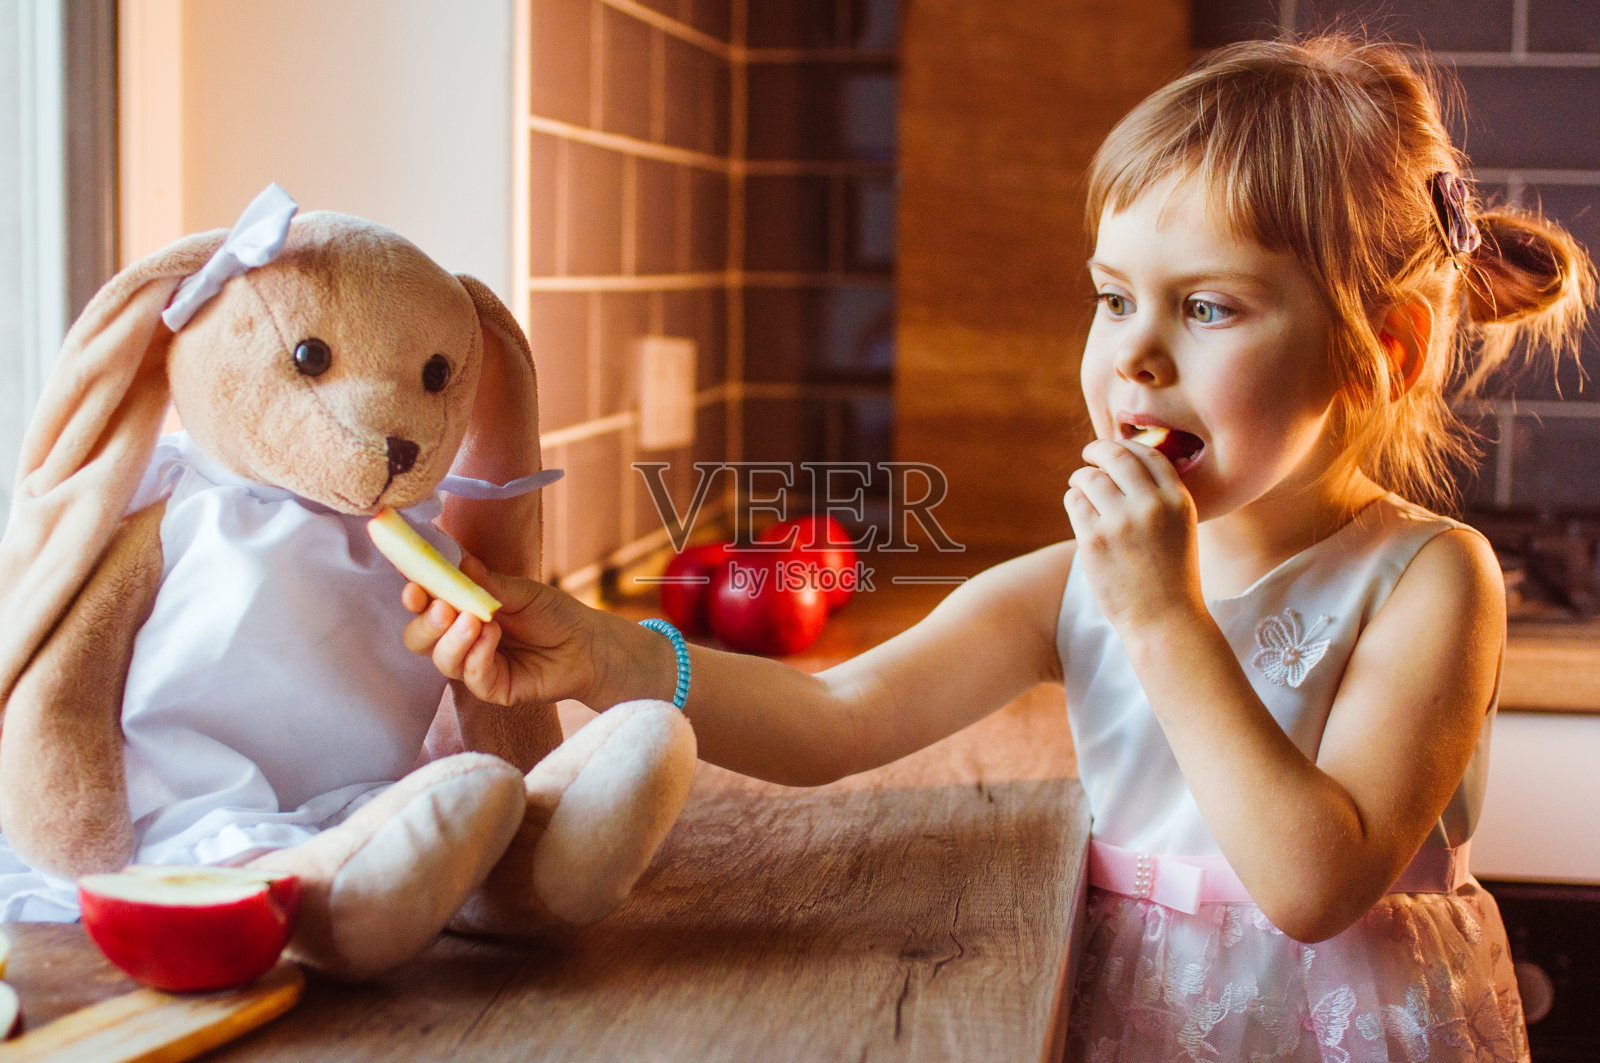 一个小女孩和一只兔子的肖像 库存图片. 图片 包括有 放松, 子项, 纵向, 女孩, 兔子, 柔软, 年轻 - 237272469